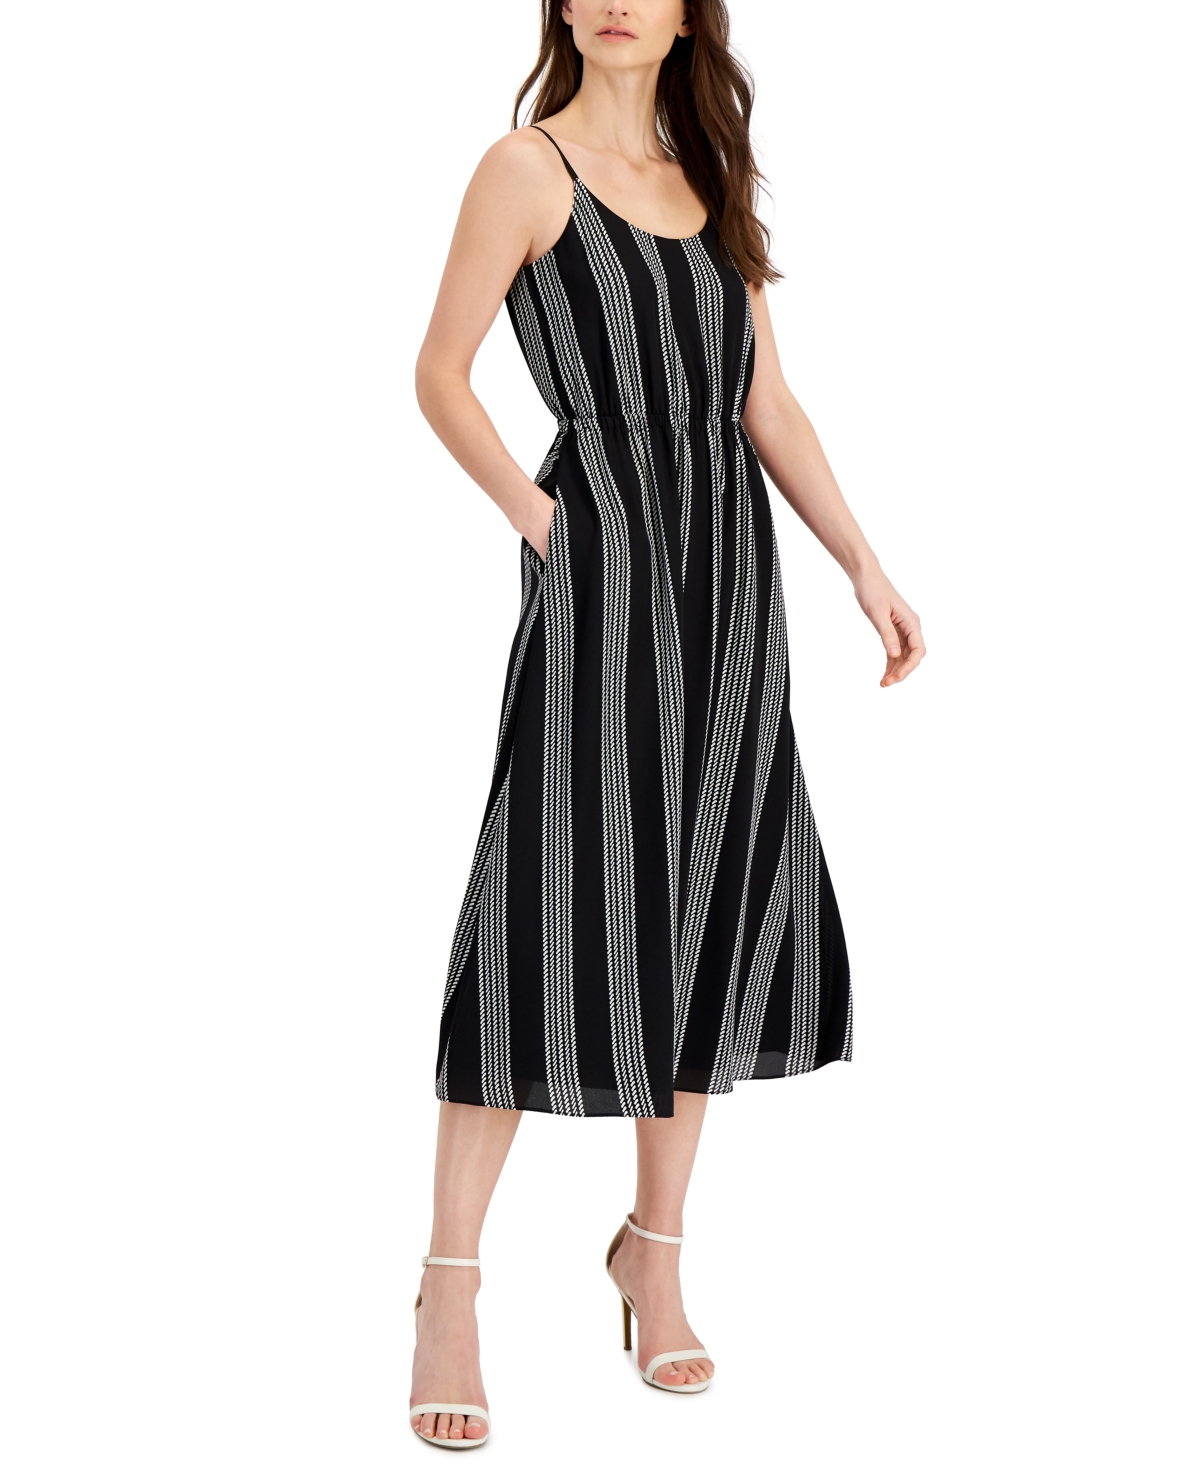 Anne Klein Women's Striped Tank Dress Black Size Petite Large